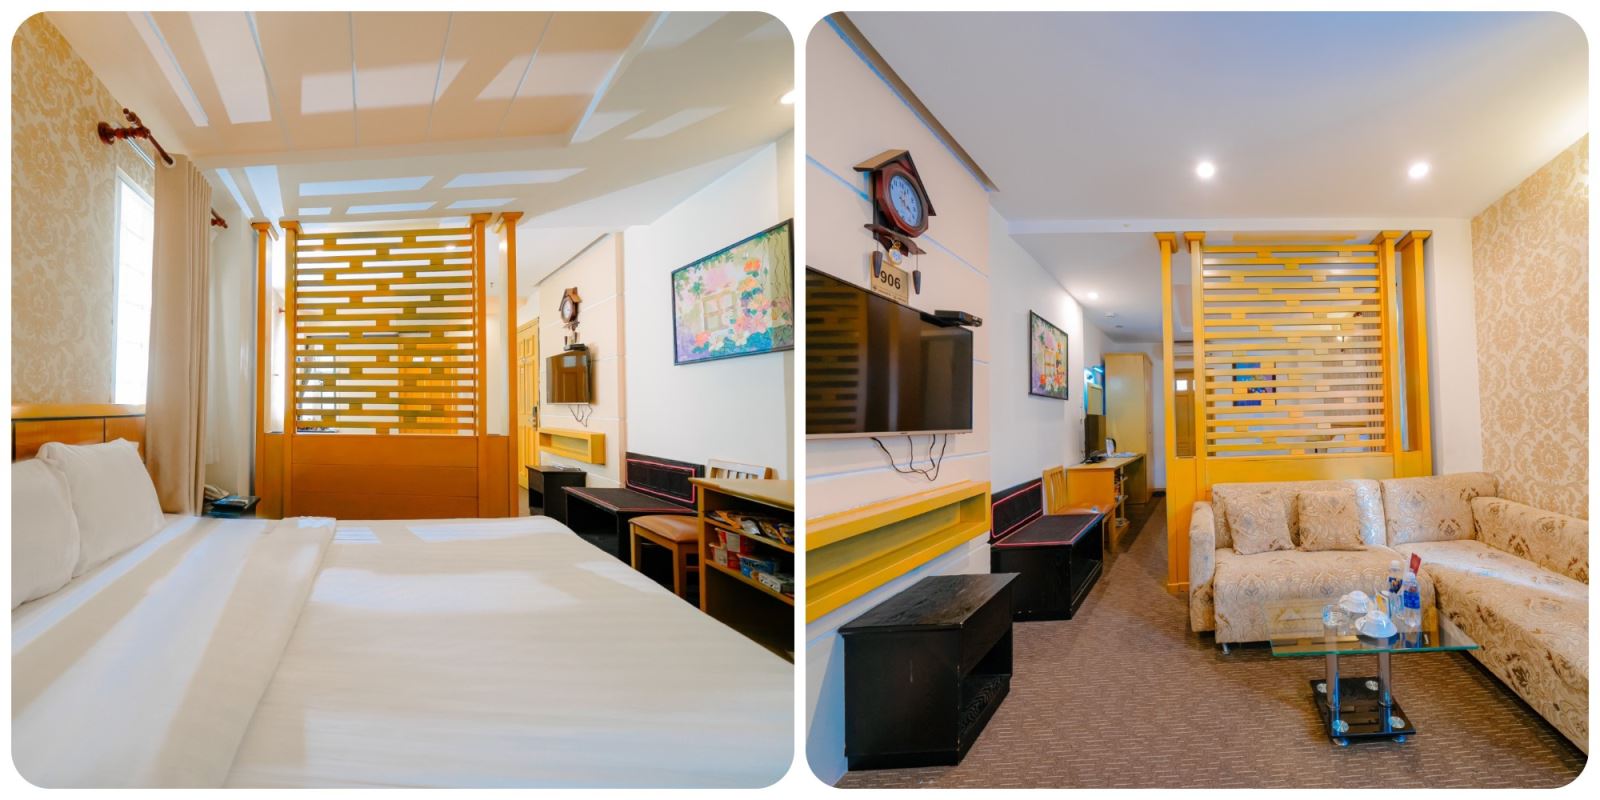 A25 Hotel 29 – 31 Bùi Thị Xuân Q1 TPHCM: Tiện nghi, sang trọng và riêng tư